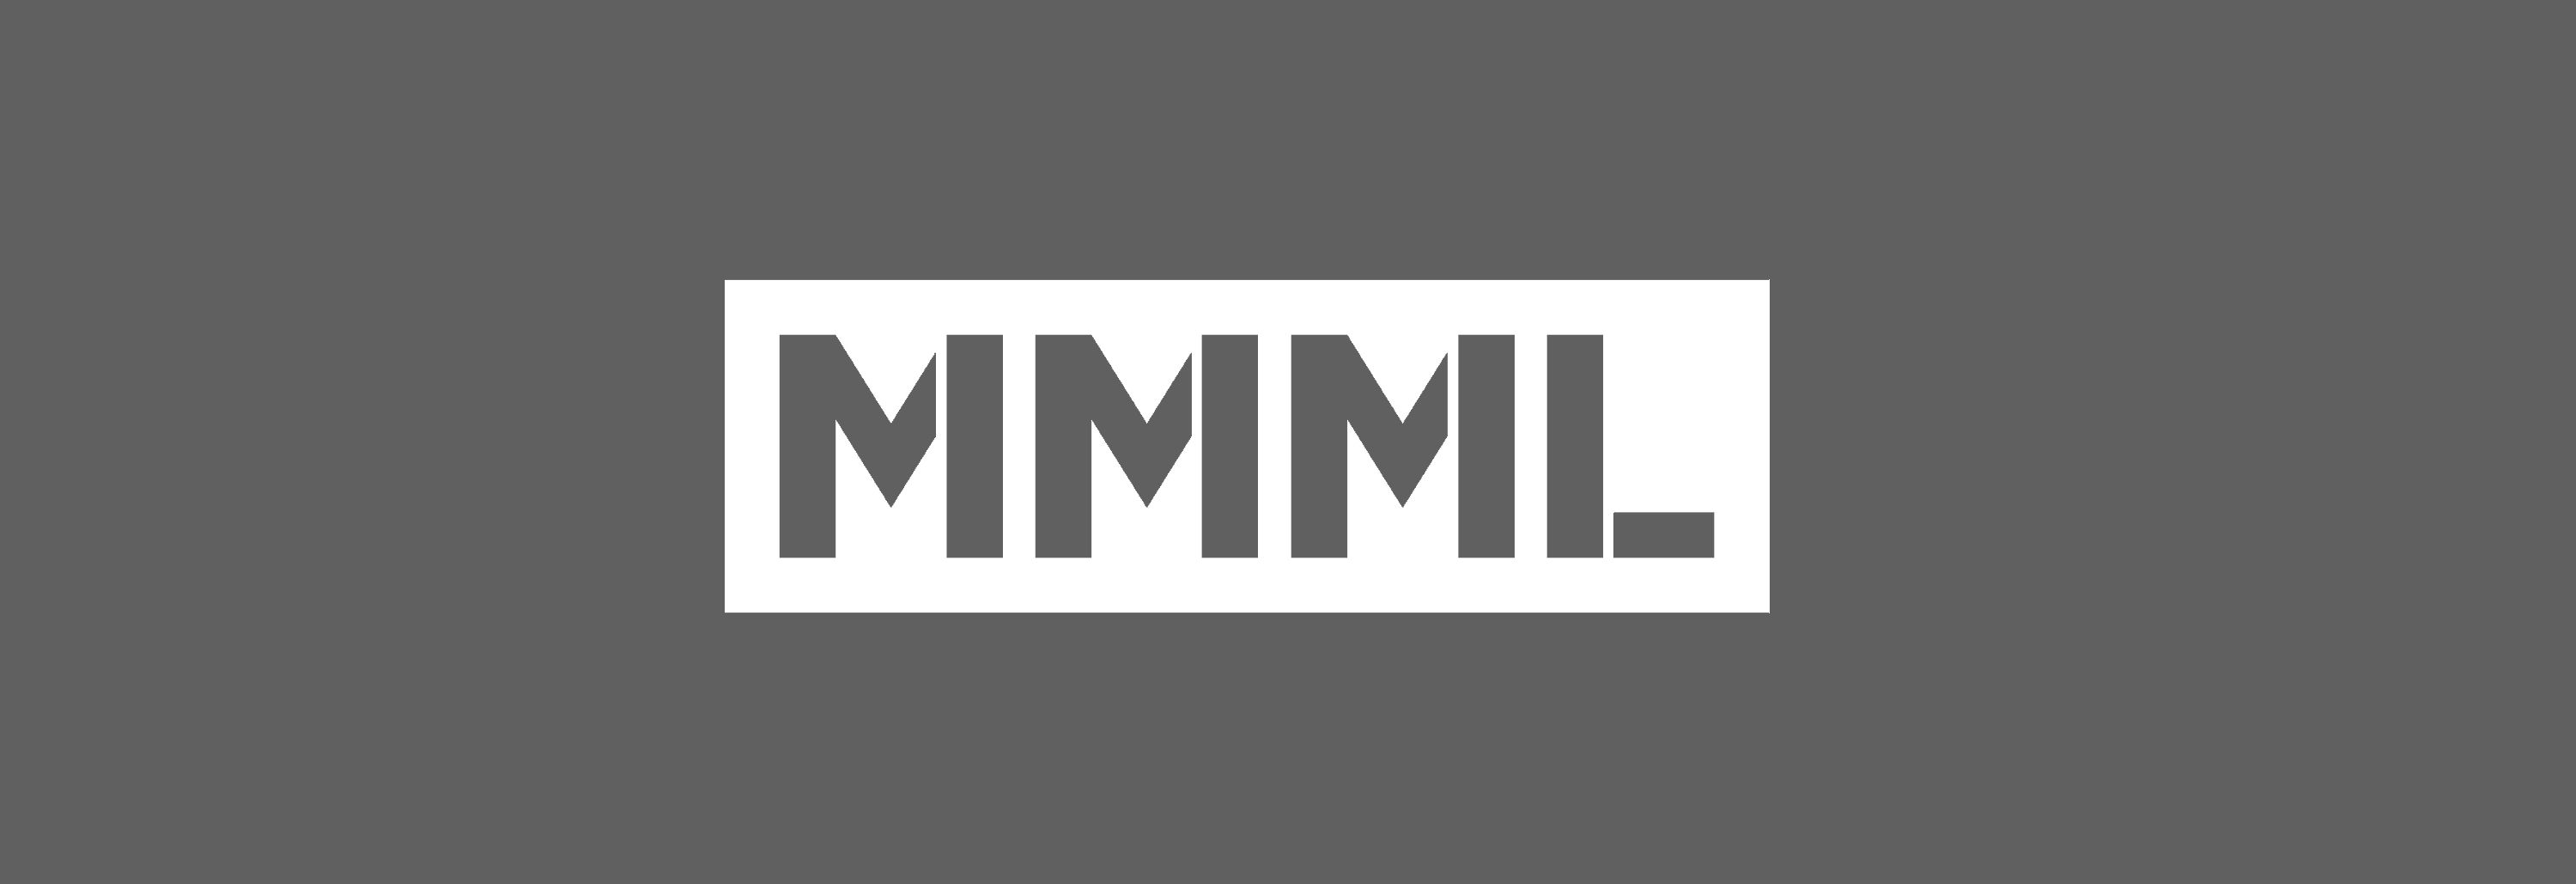 MMML Project SHOP